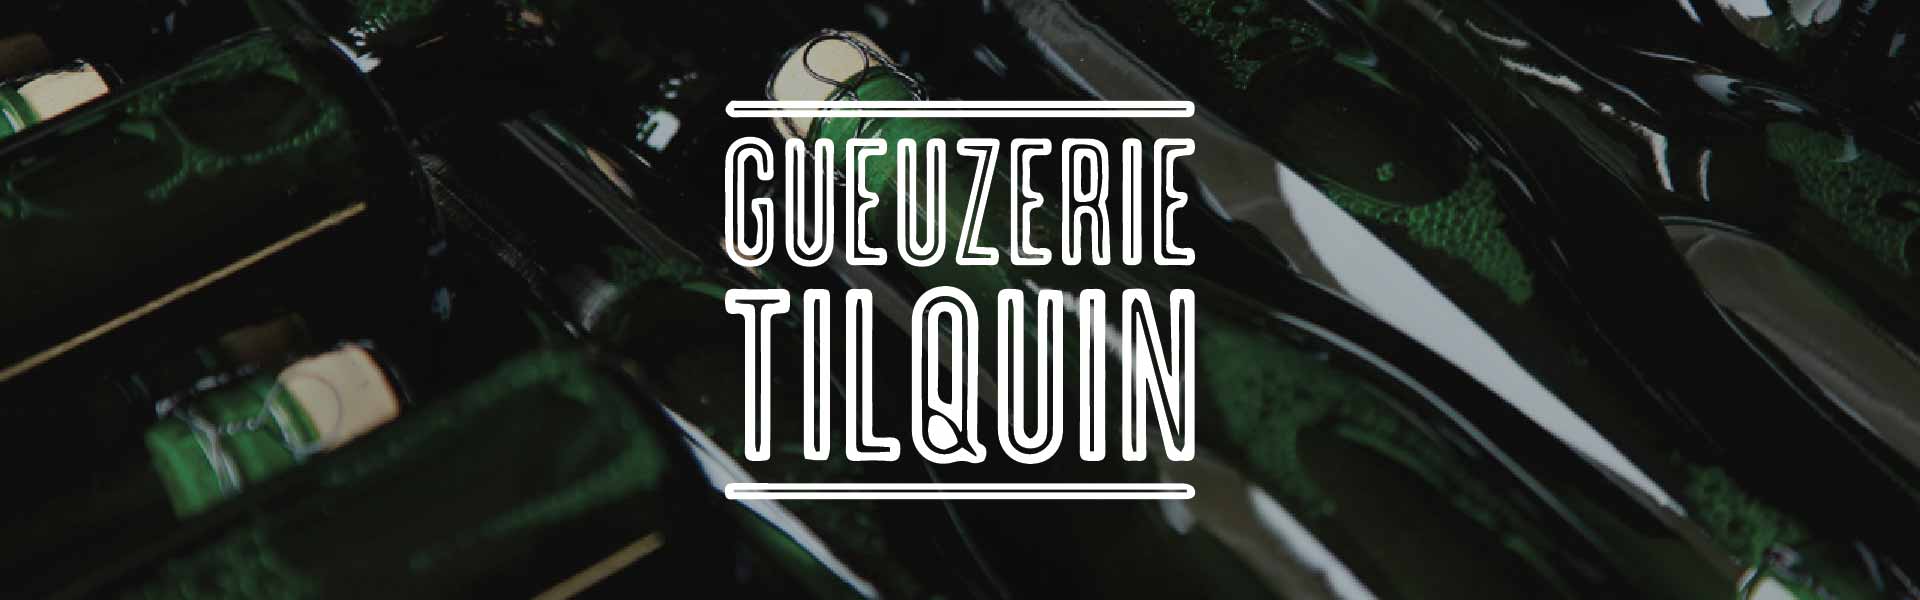 Gueuzerie Tilquin Beer